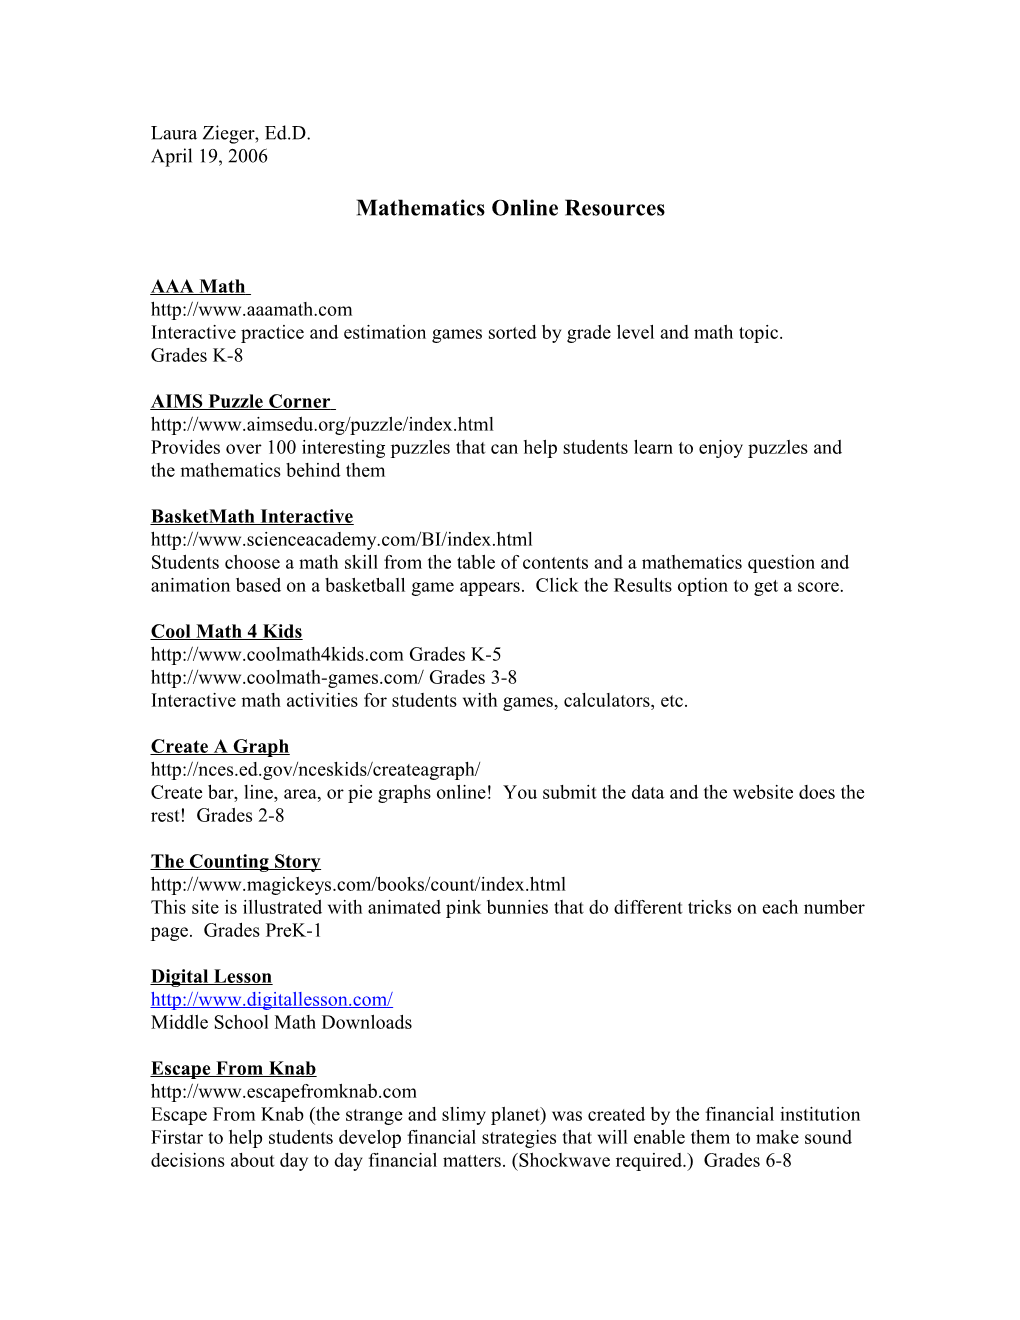 Mathematics Online Resources